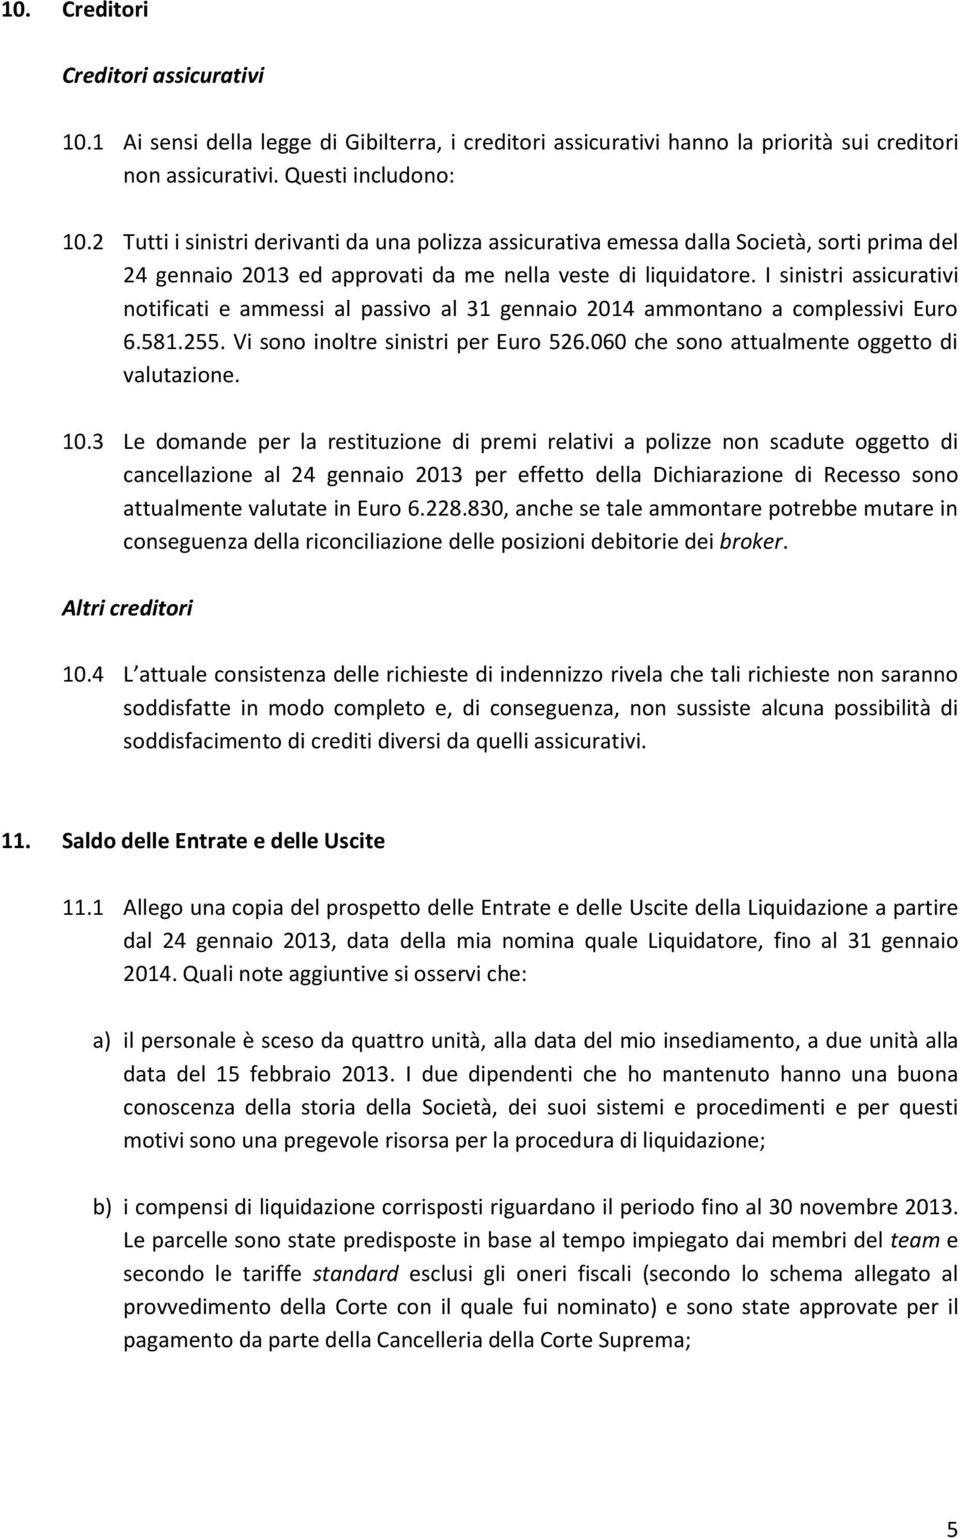 I sinistri assicurativi notificati e ammessi al passivo al 31 gennaio 2014 ammontano a complessivi Euro 6.581.255. Vi sono inoltre sinistri per Euro 526.